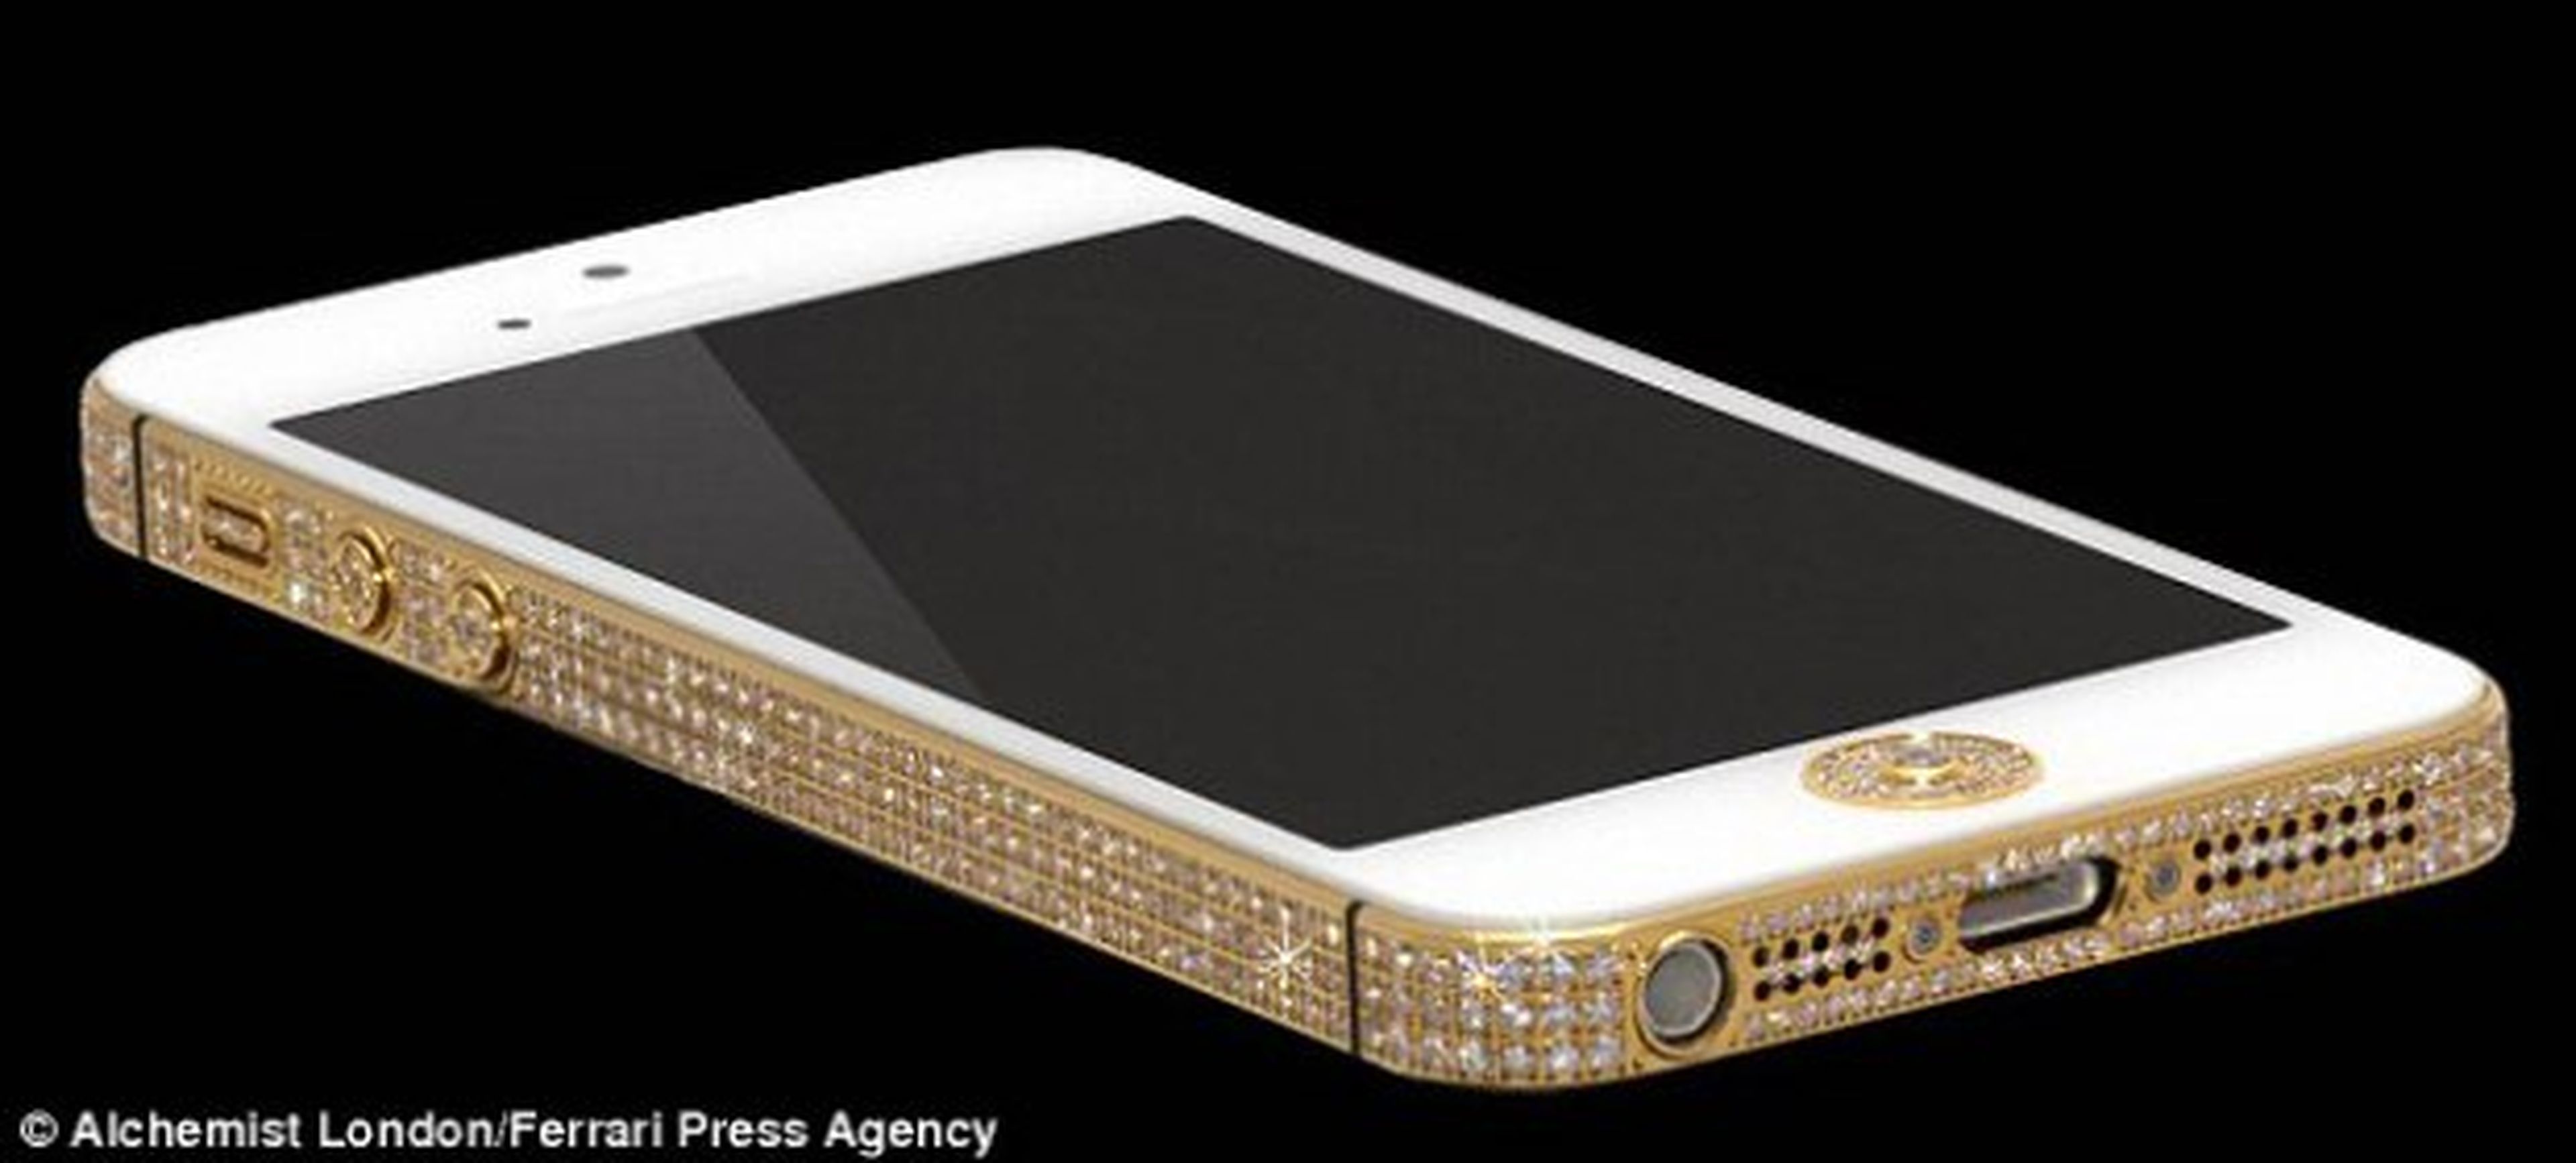 Lanzan "Million Dollar iPhone" con diamantes y oro de 24K